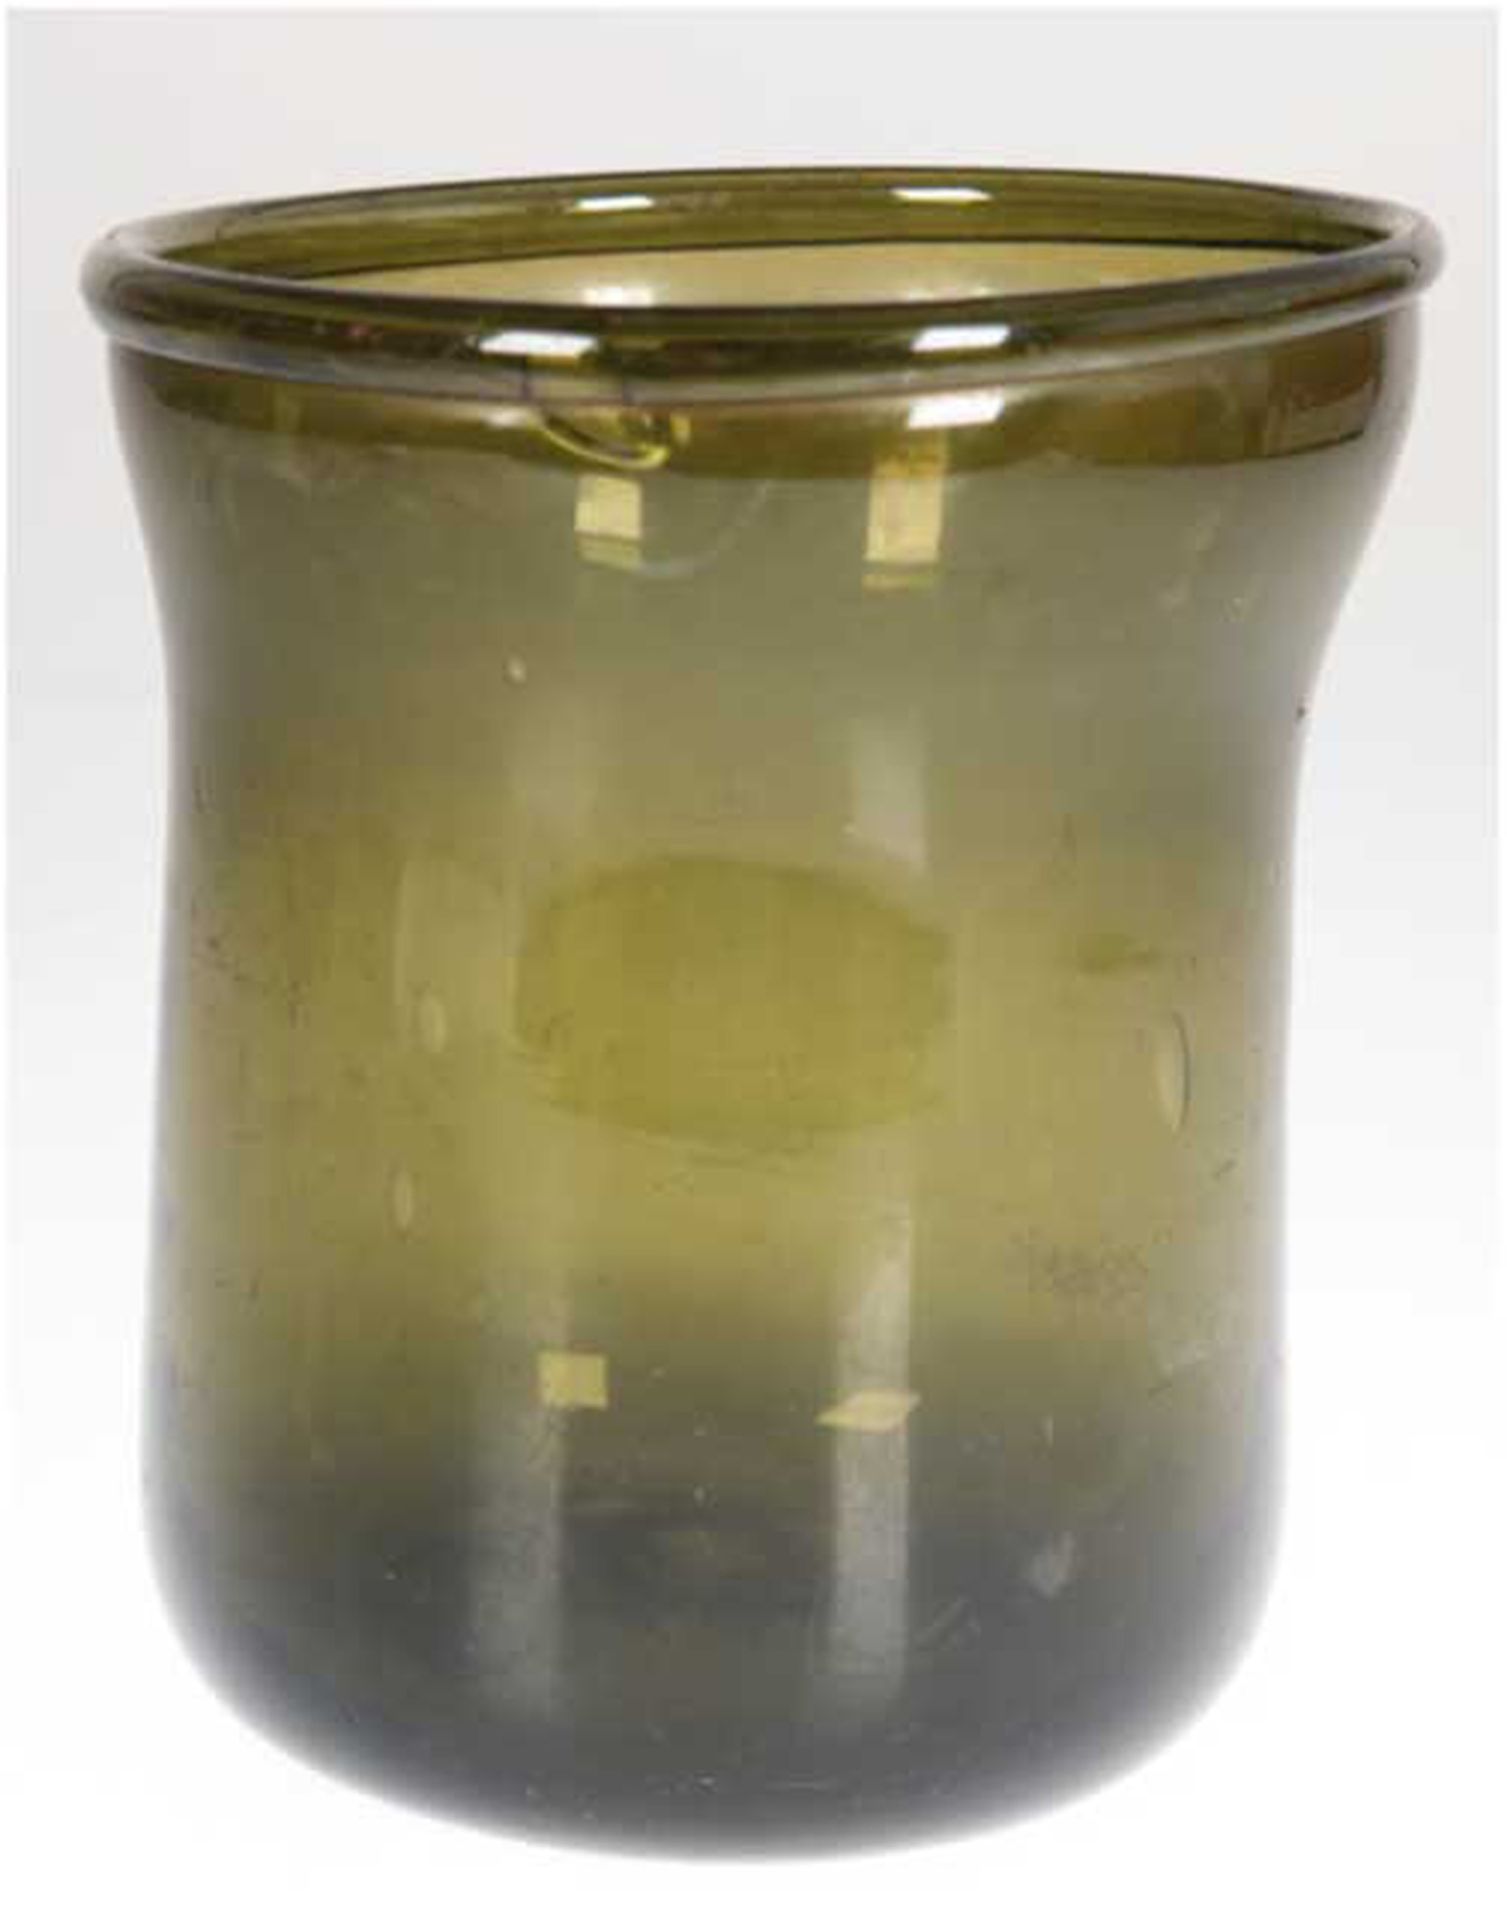 Glashafen, Anf. 19. Jh., grünes Waldglas, mit Abriß und umgeschlagenem Rand, H. 21 cm, Dm. 18,5 cm